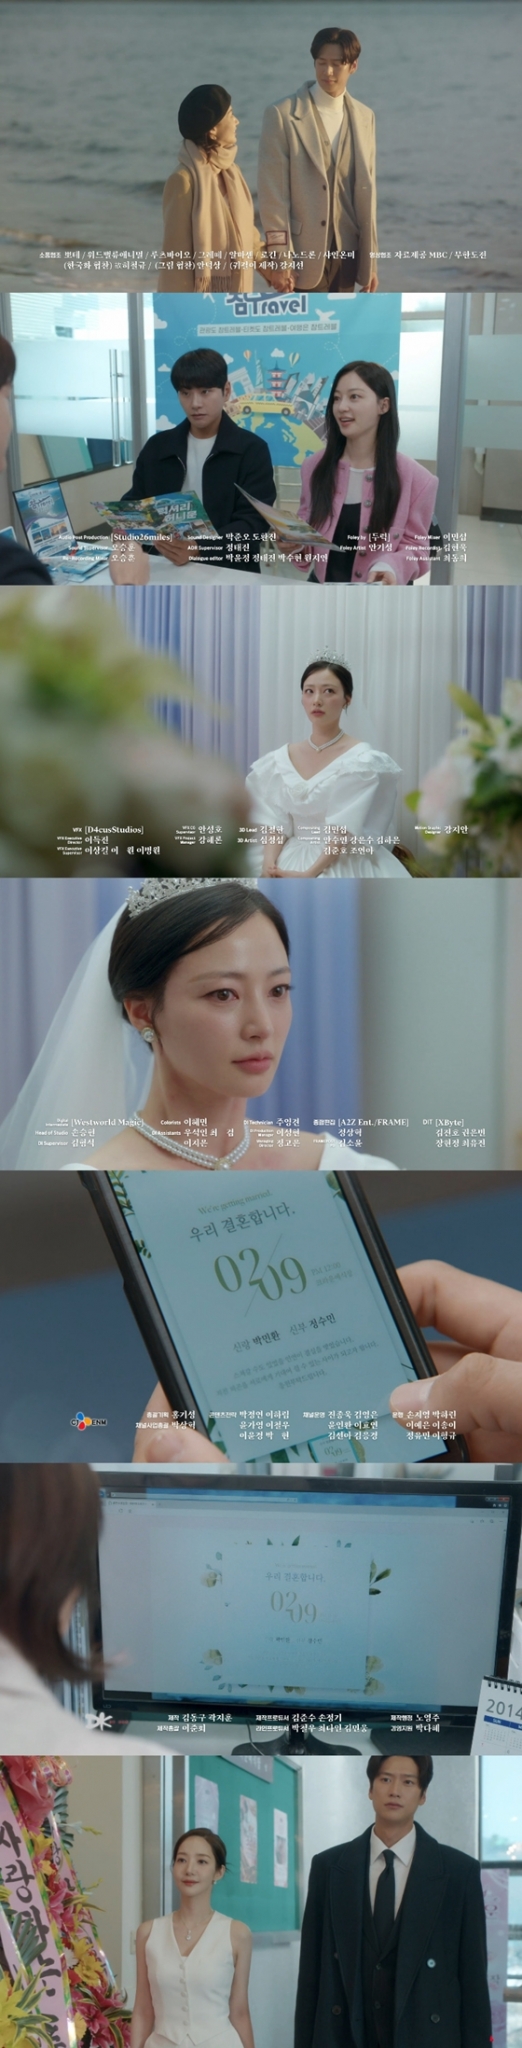 tvN 월화드라마 '내 남편과 결혼해줘'./사진=tvN 월화드라마 '내 남편과 결혼해줘' 방송 화면 캡처